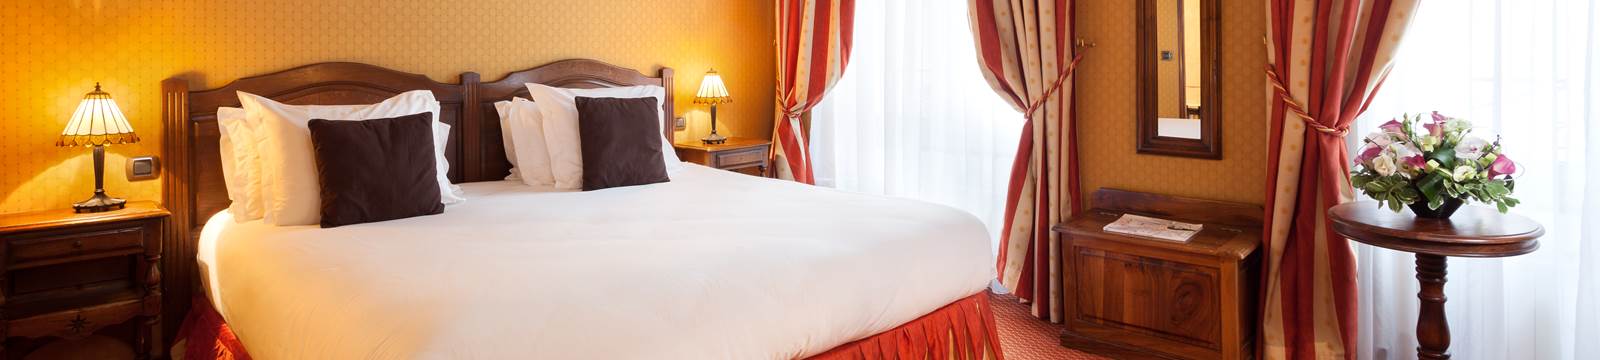 Superior Room Hotel Amarante Beau Manoir Paris